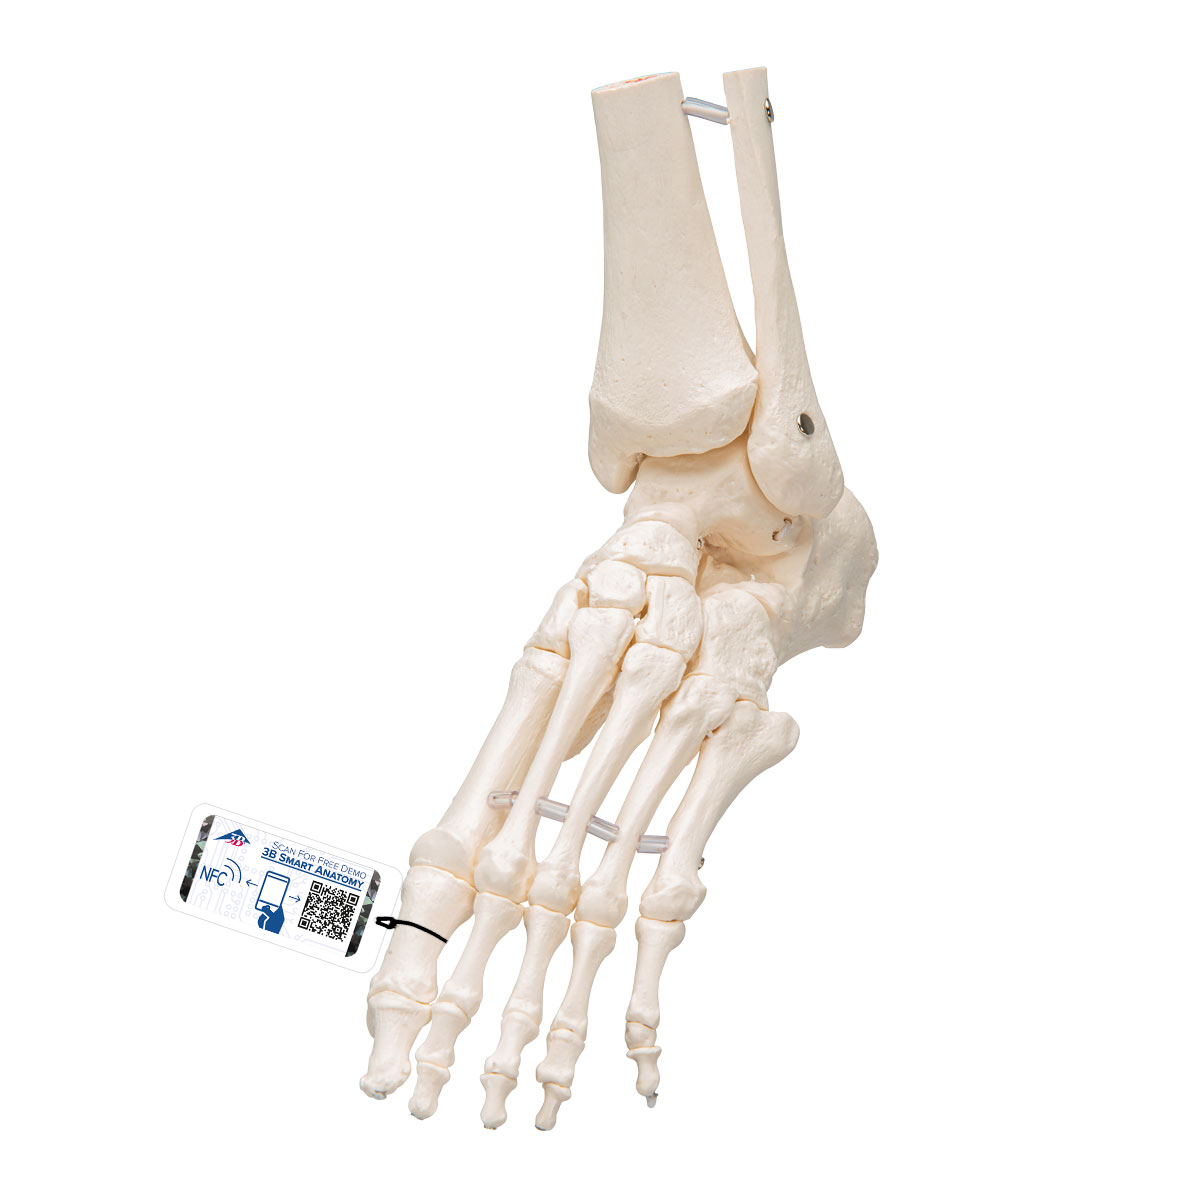 足骨骼,带有可灵活活动的胫骨和腓骨